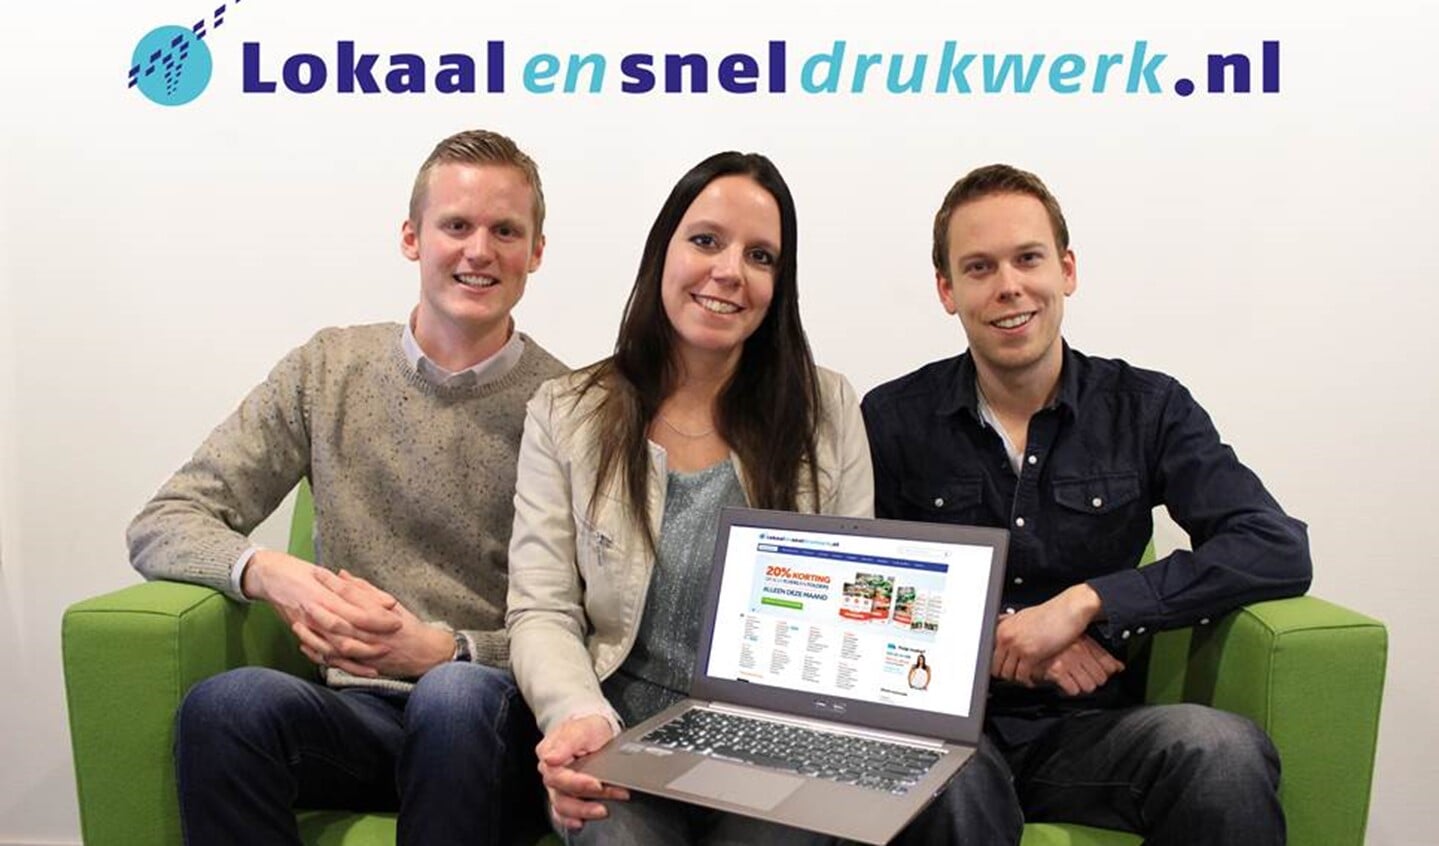 Onze Steve, Mariska en Edwin staan klanten van lokaalensneldrukwerk.nl met raad en daad bij.